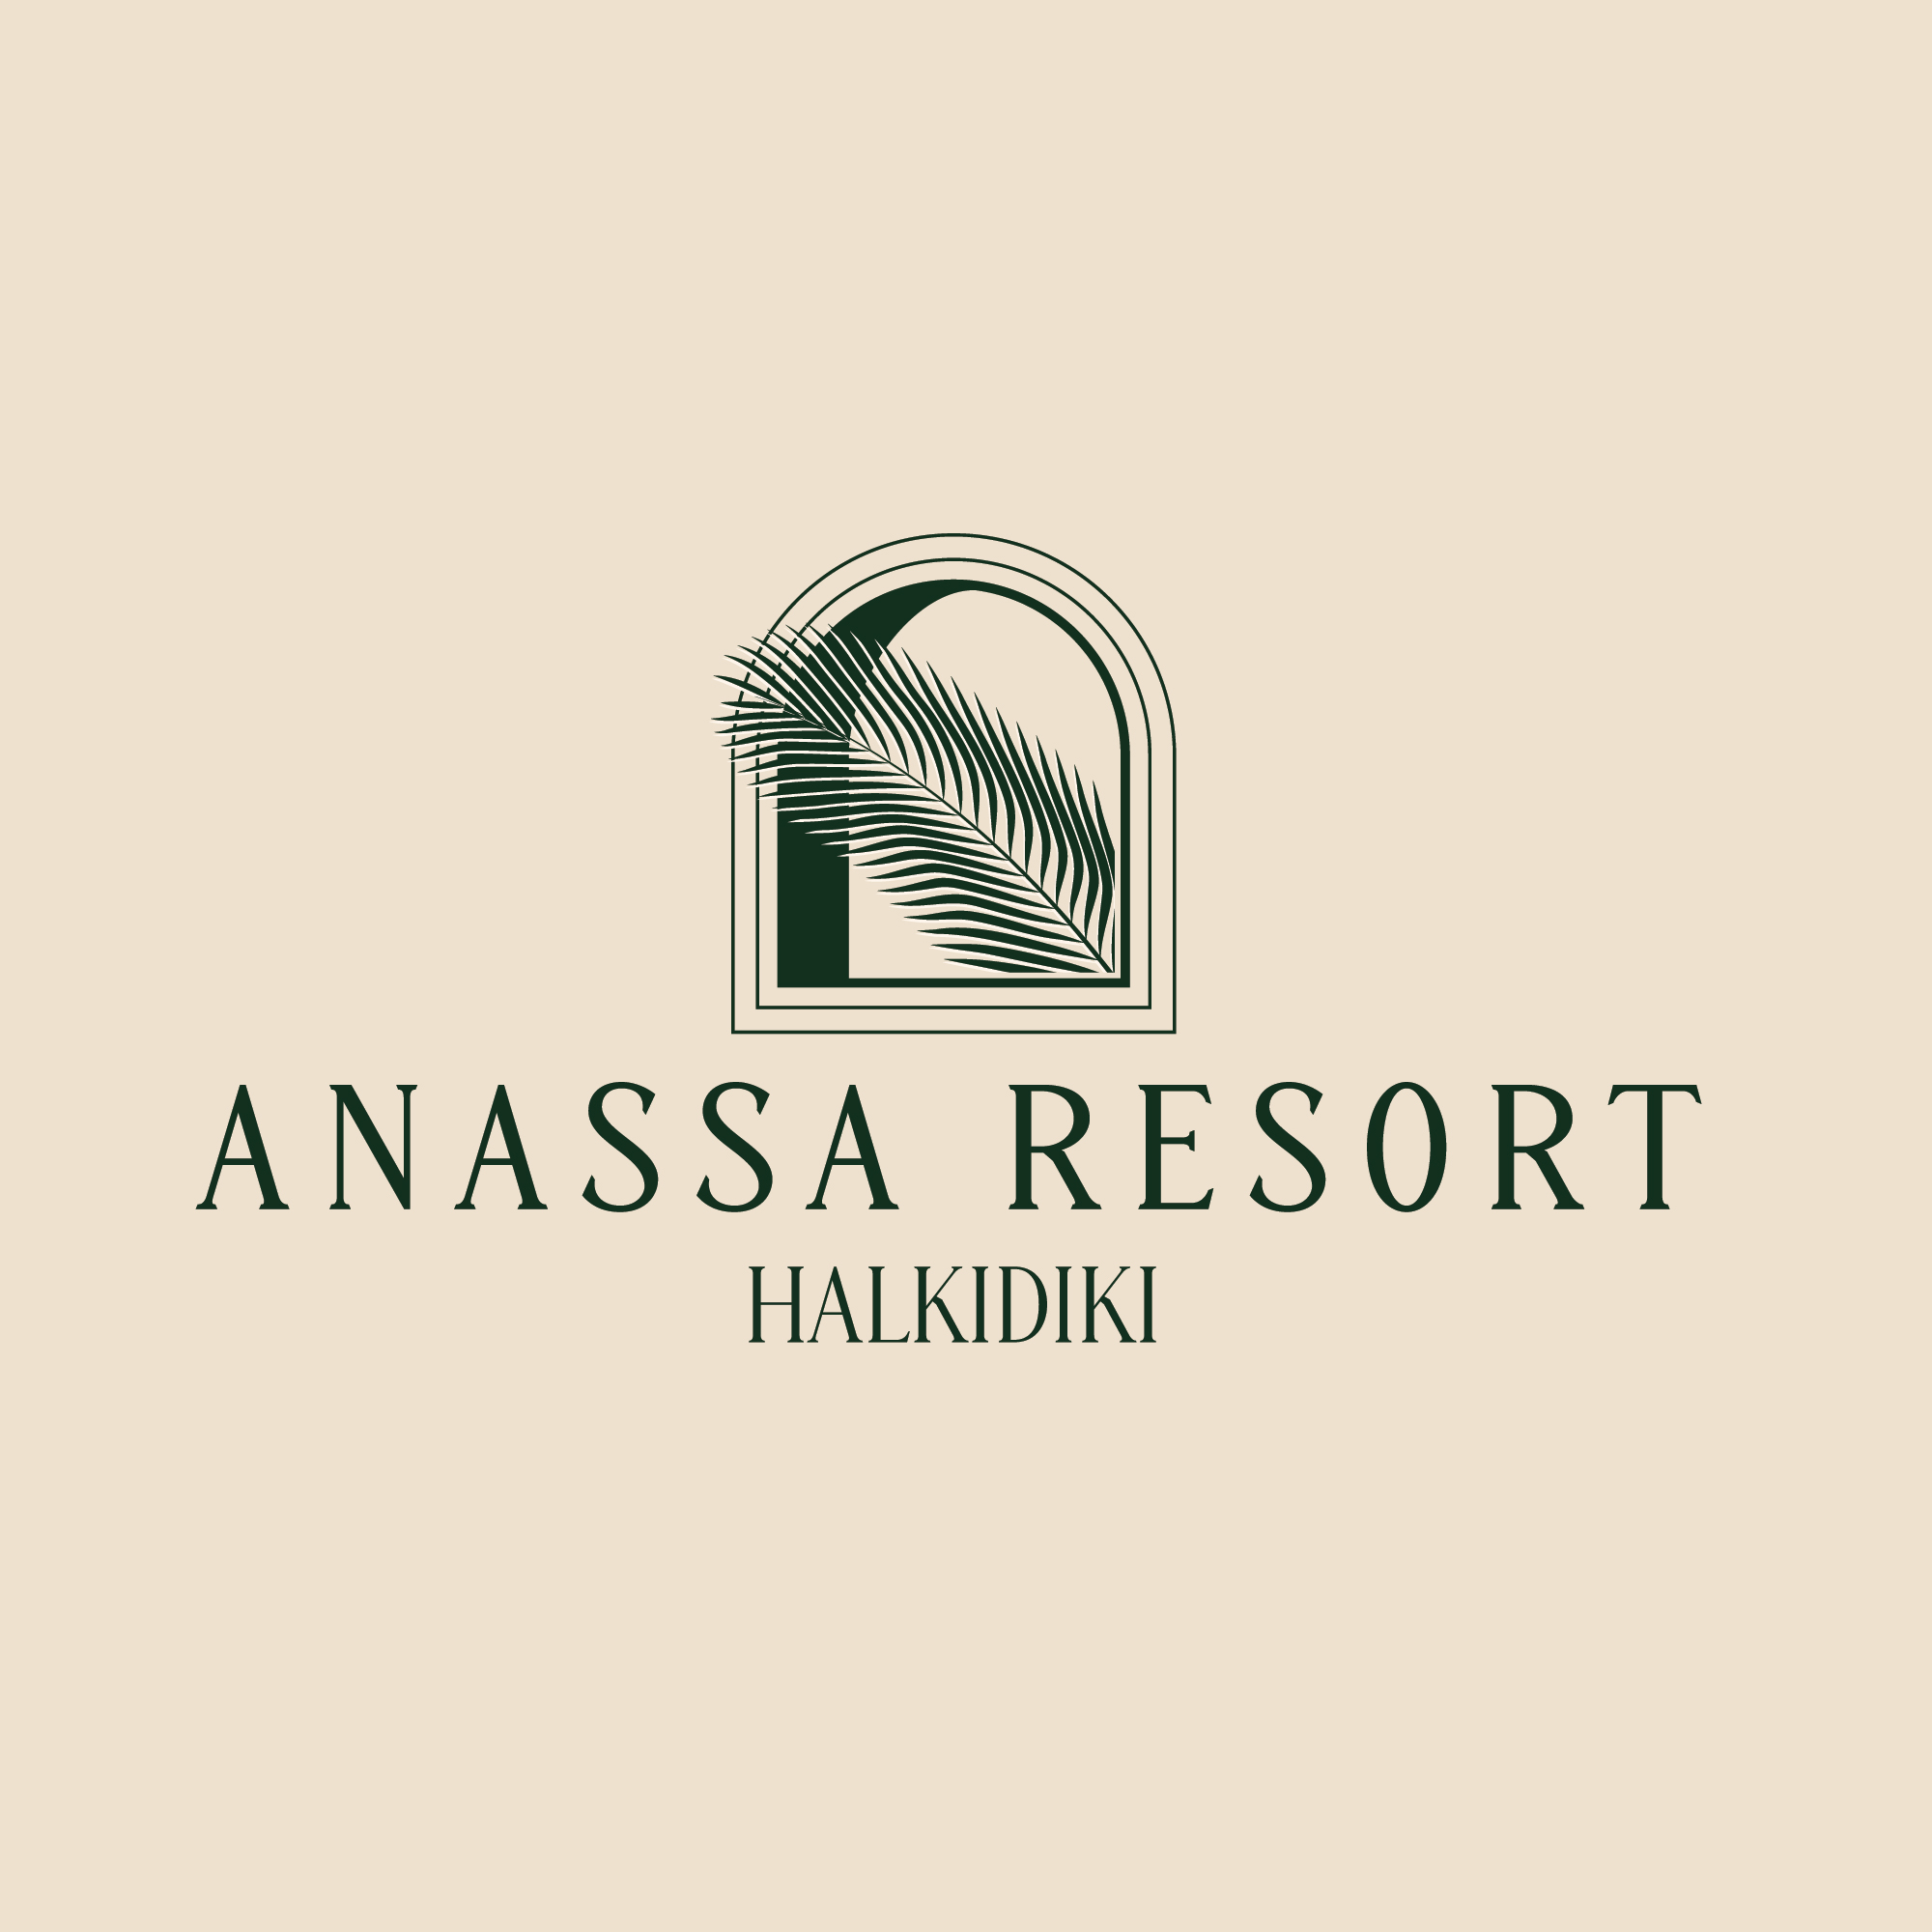 Anassa Resort Halkidiki